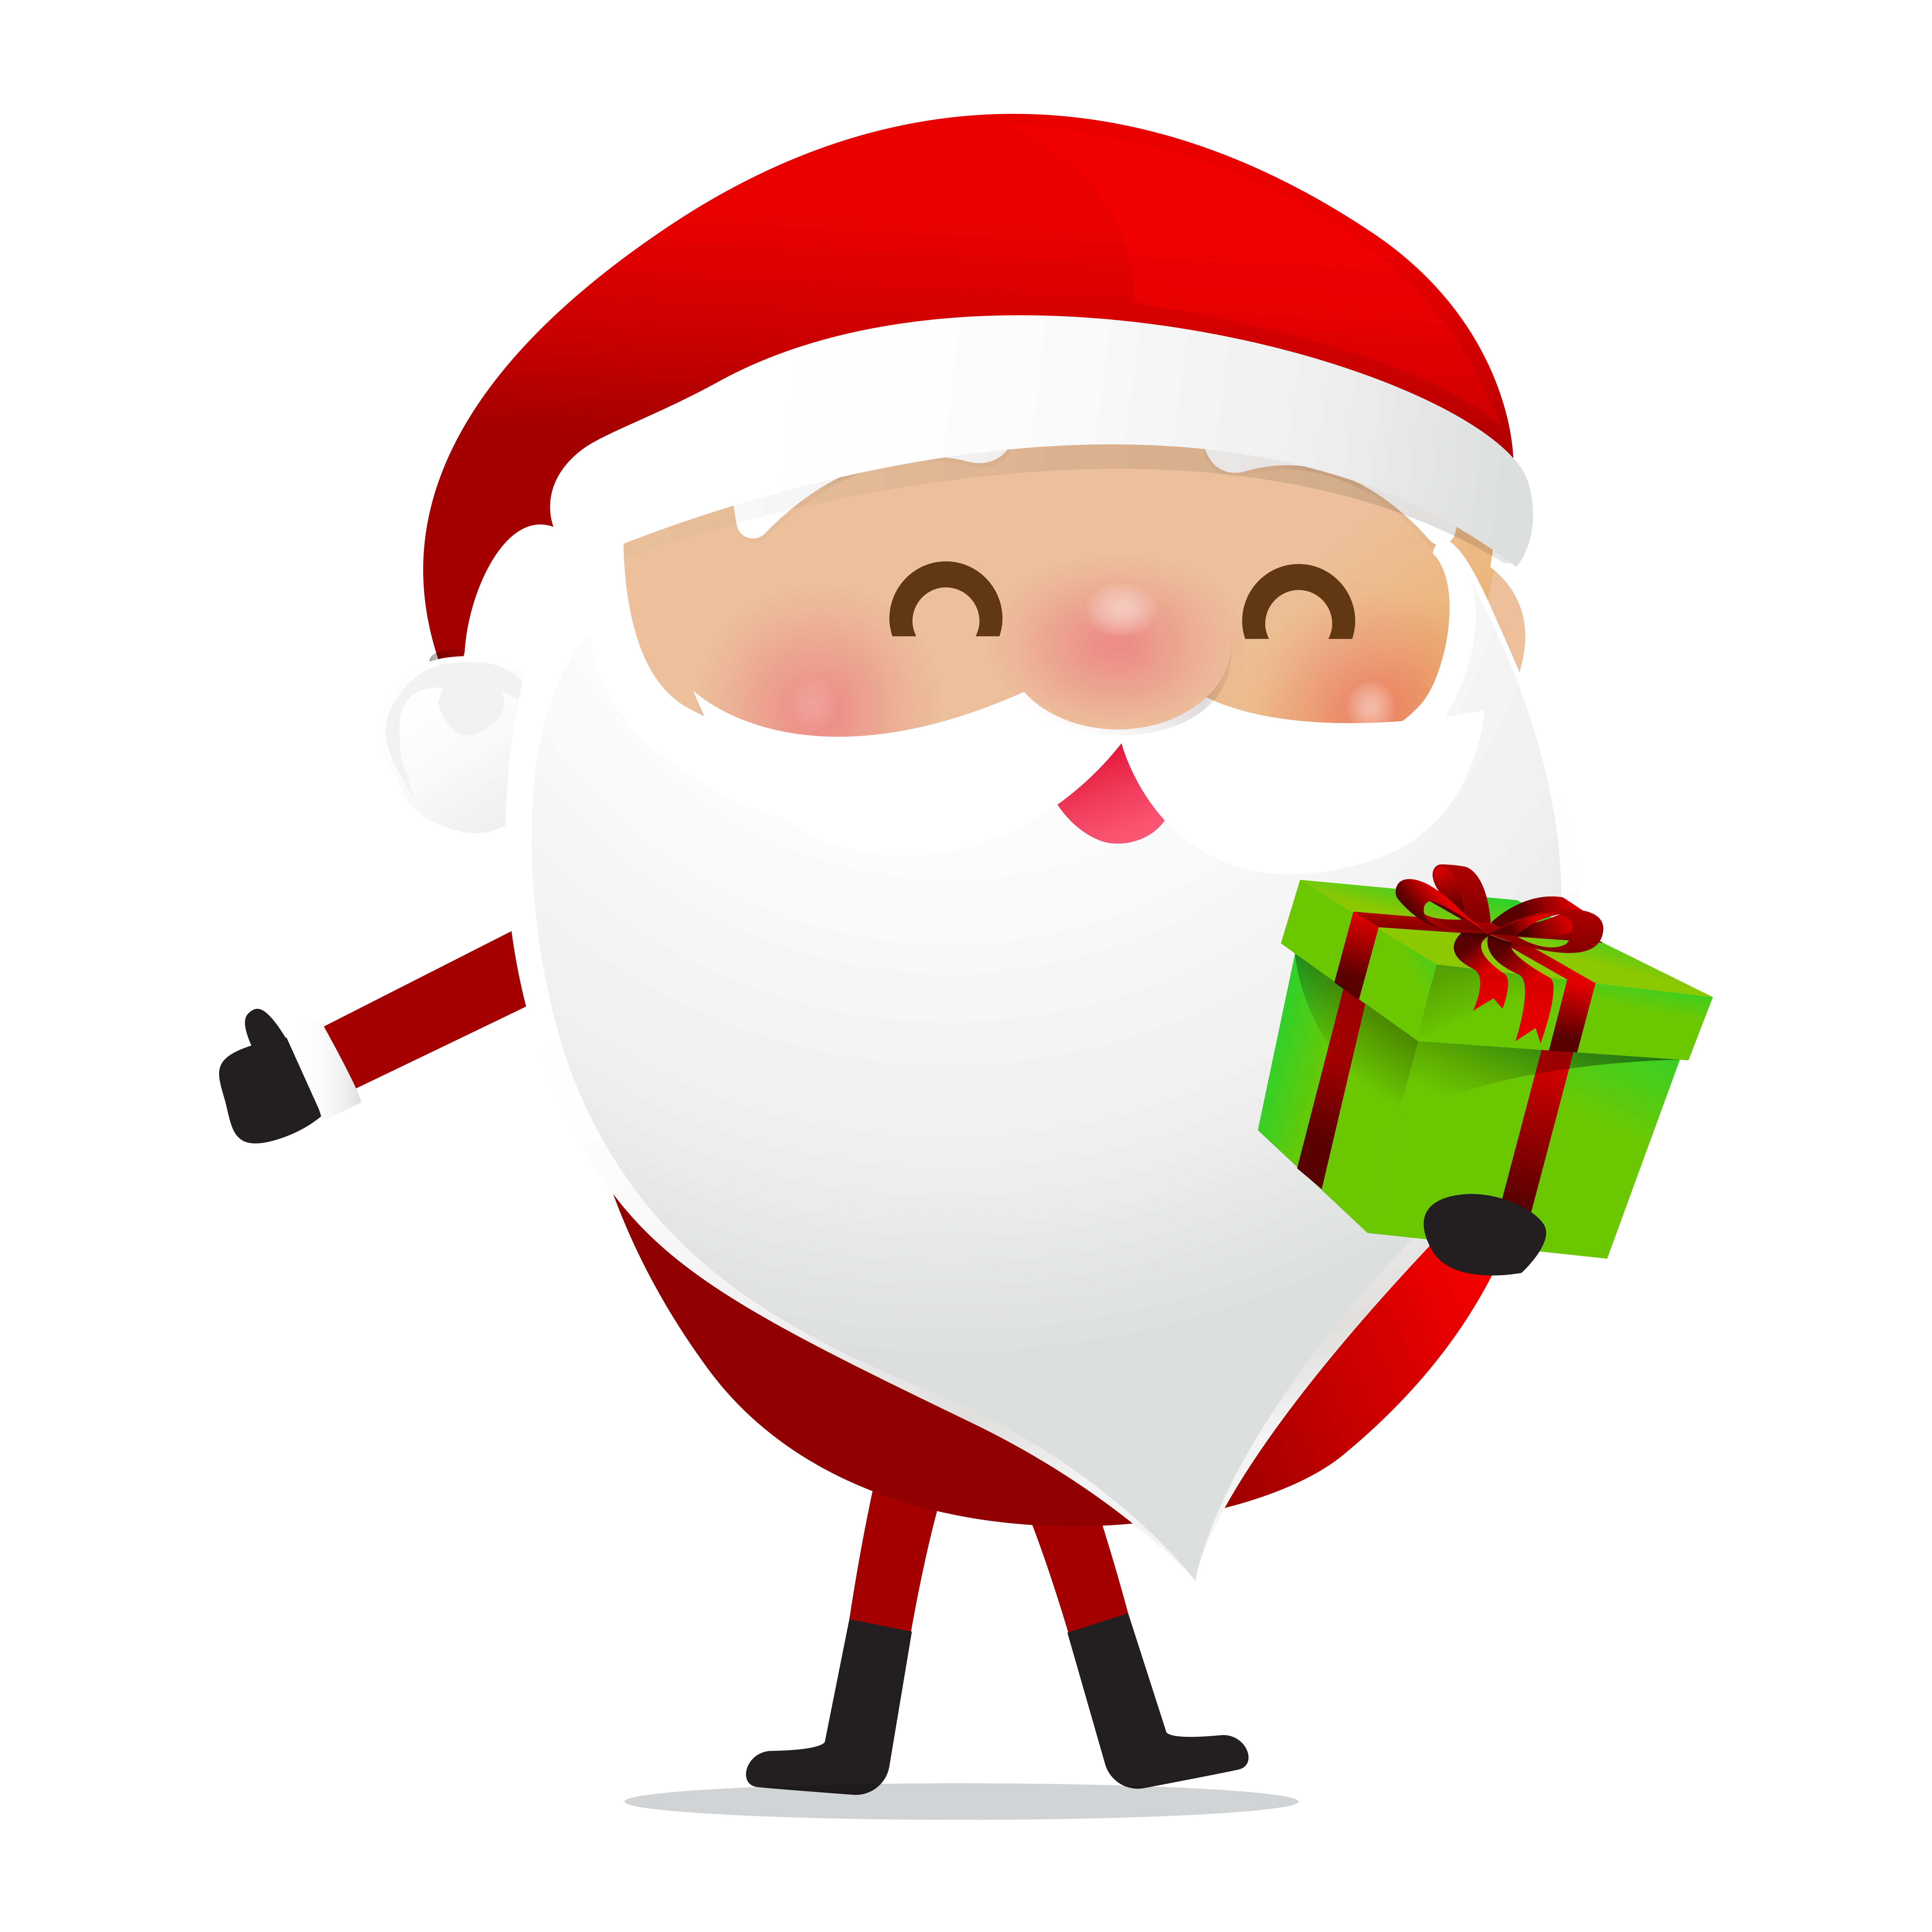 Happy Christmas character Santa claus cartoon - Download Free Vectors, Clipart Graphics & Vector Art